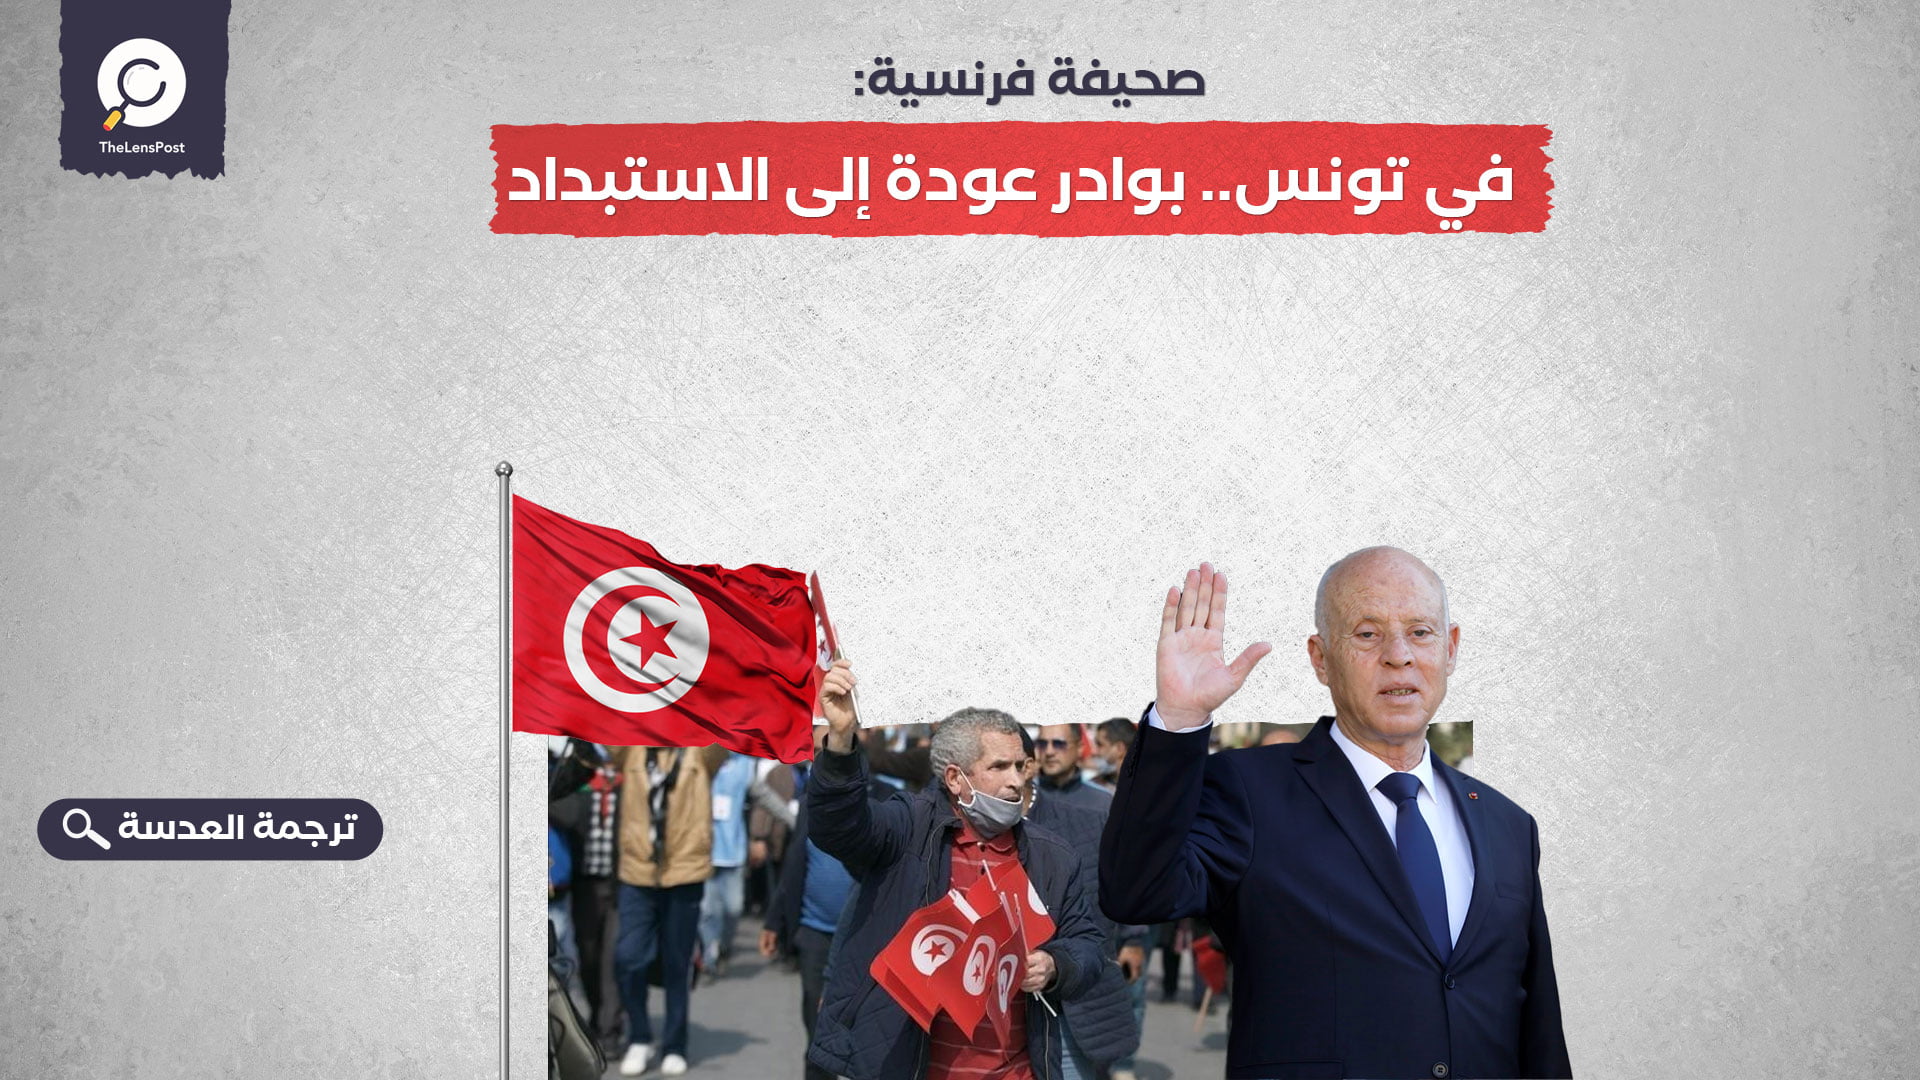 صحيفة فرنسية: في تونس.. بوادر عودة إلى الاستبداد